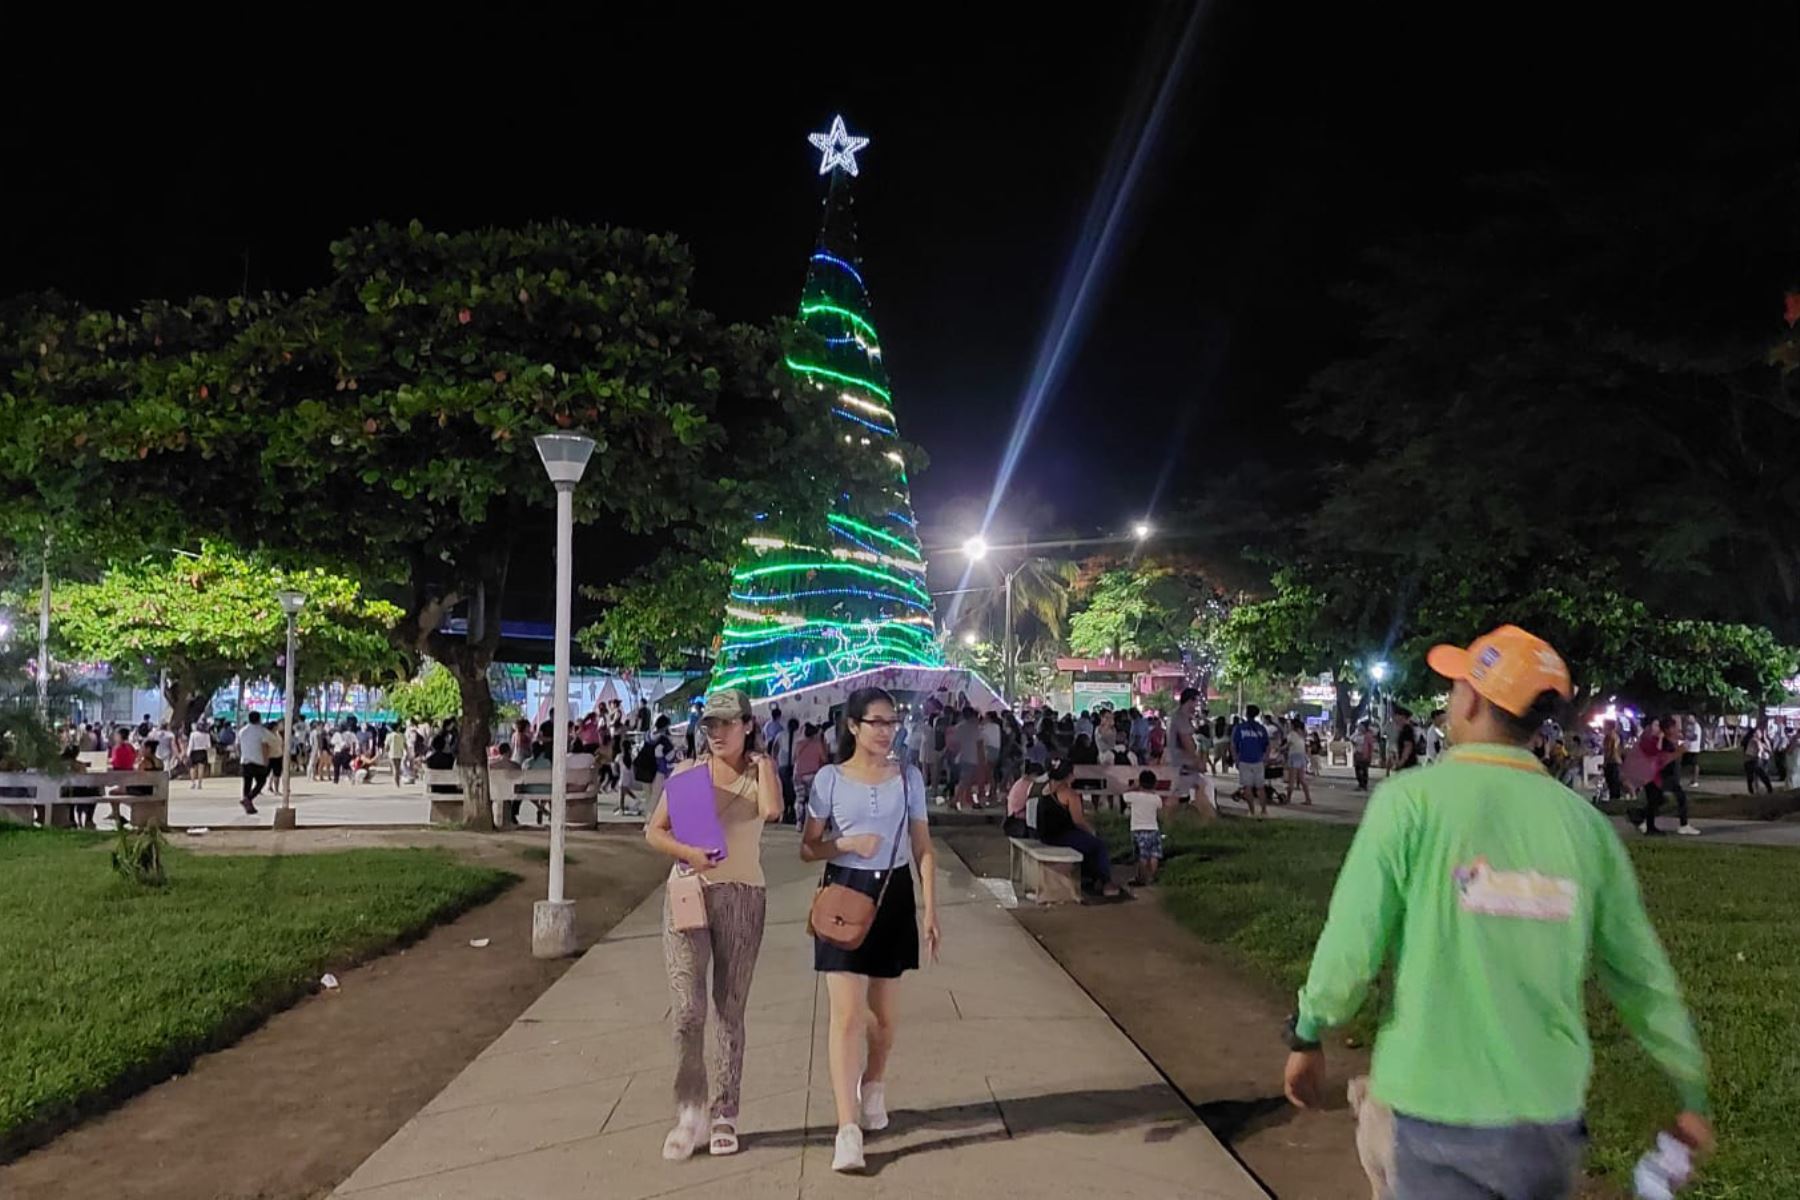 El árbol de Navidad instalado en la plaza Juan Valer Sandoval de Pichanaqui tiene 23 metros de altura y fue construido por trabajadores de la municipalidad distrital. Foto: ANDINA/Difusión